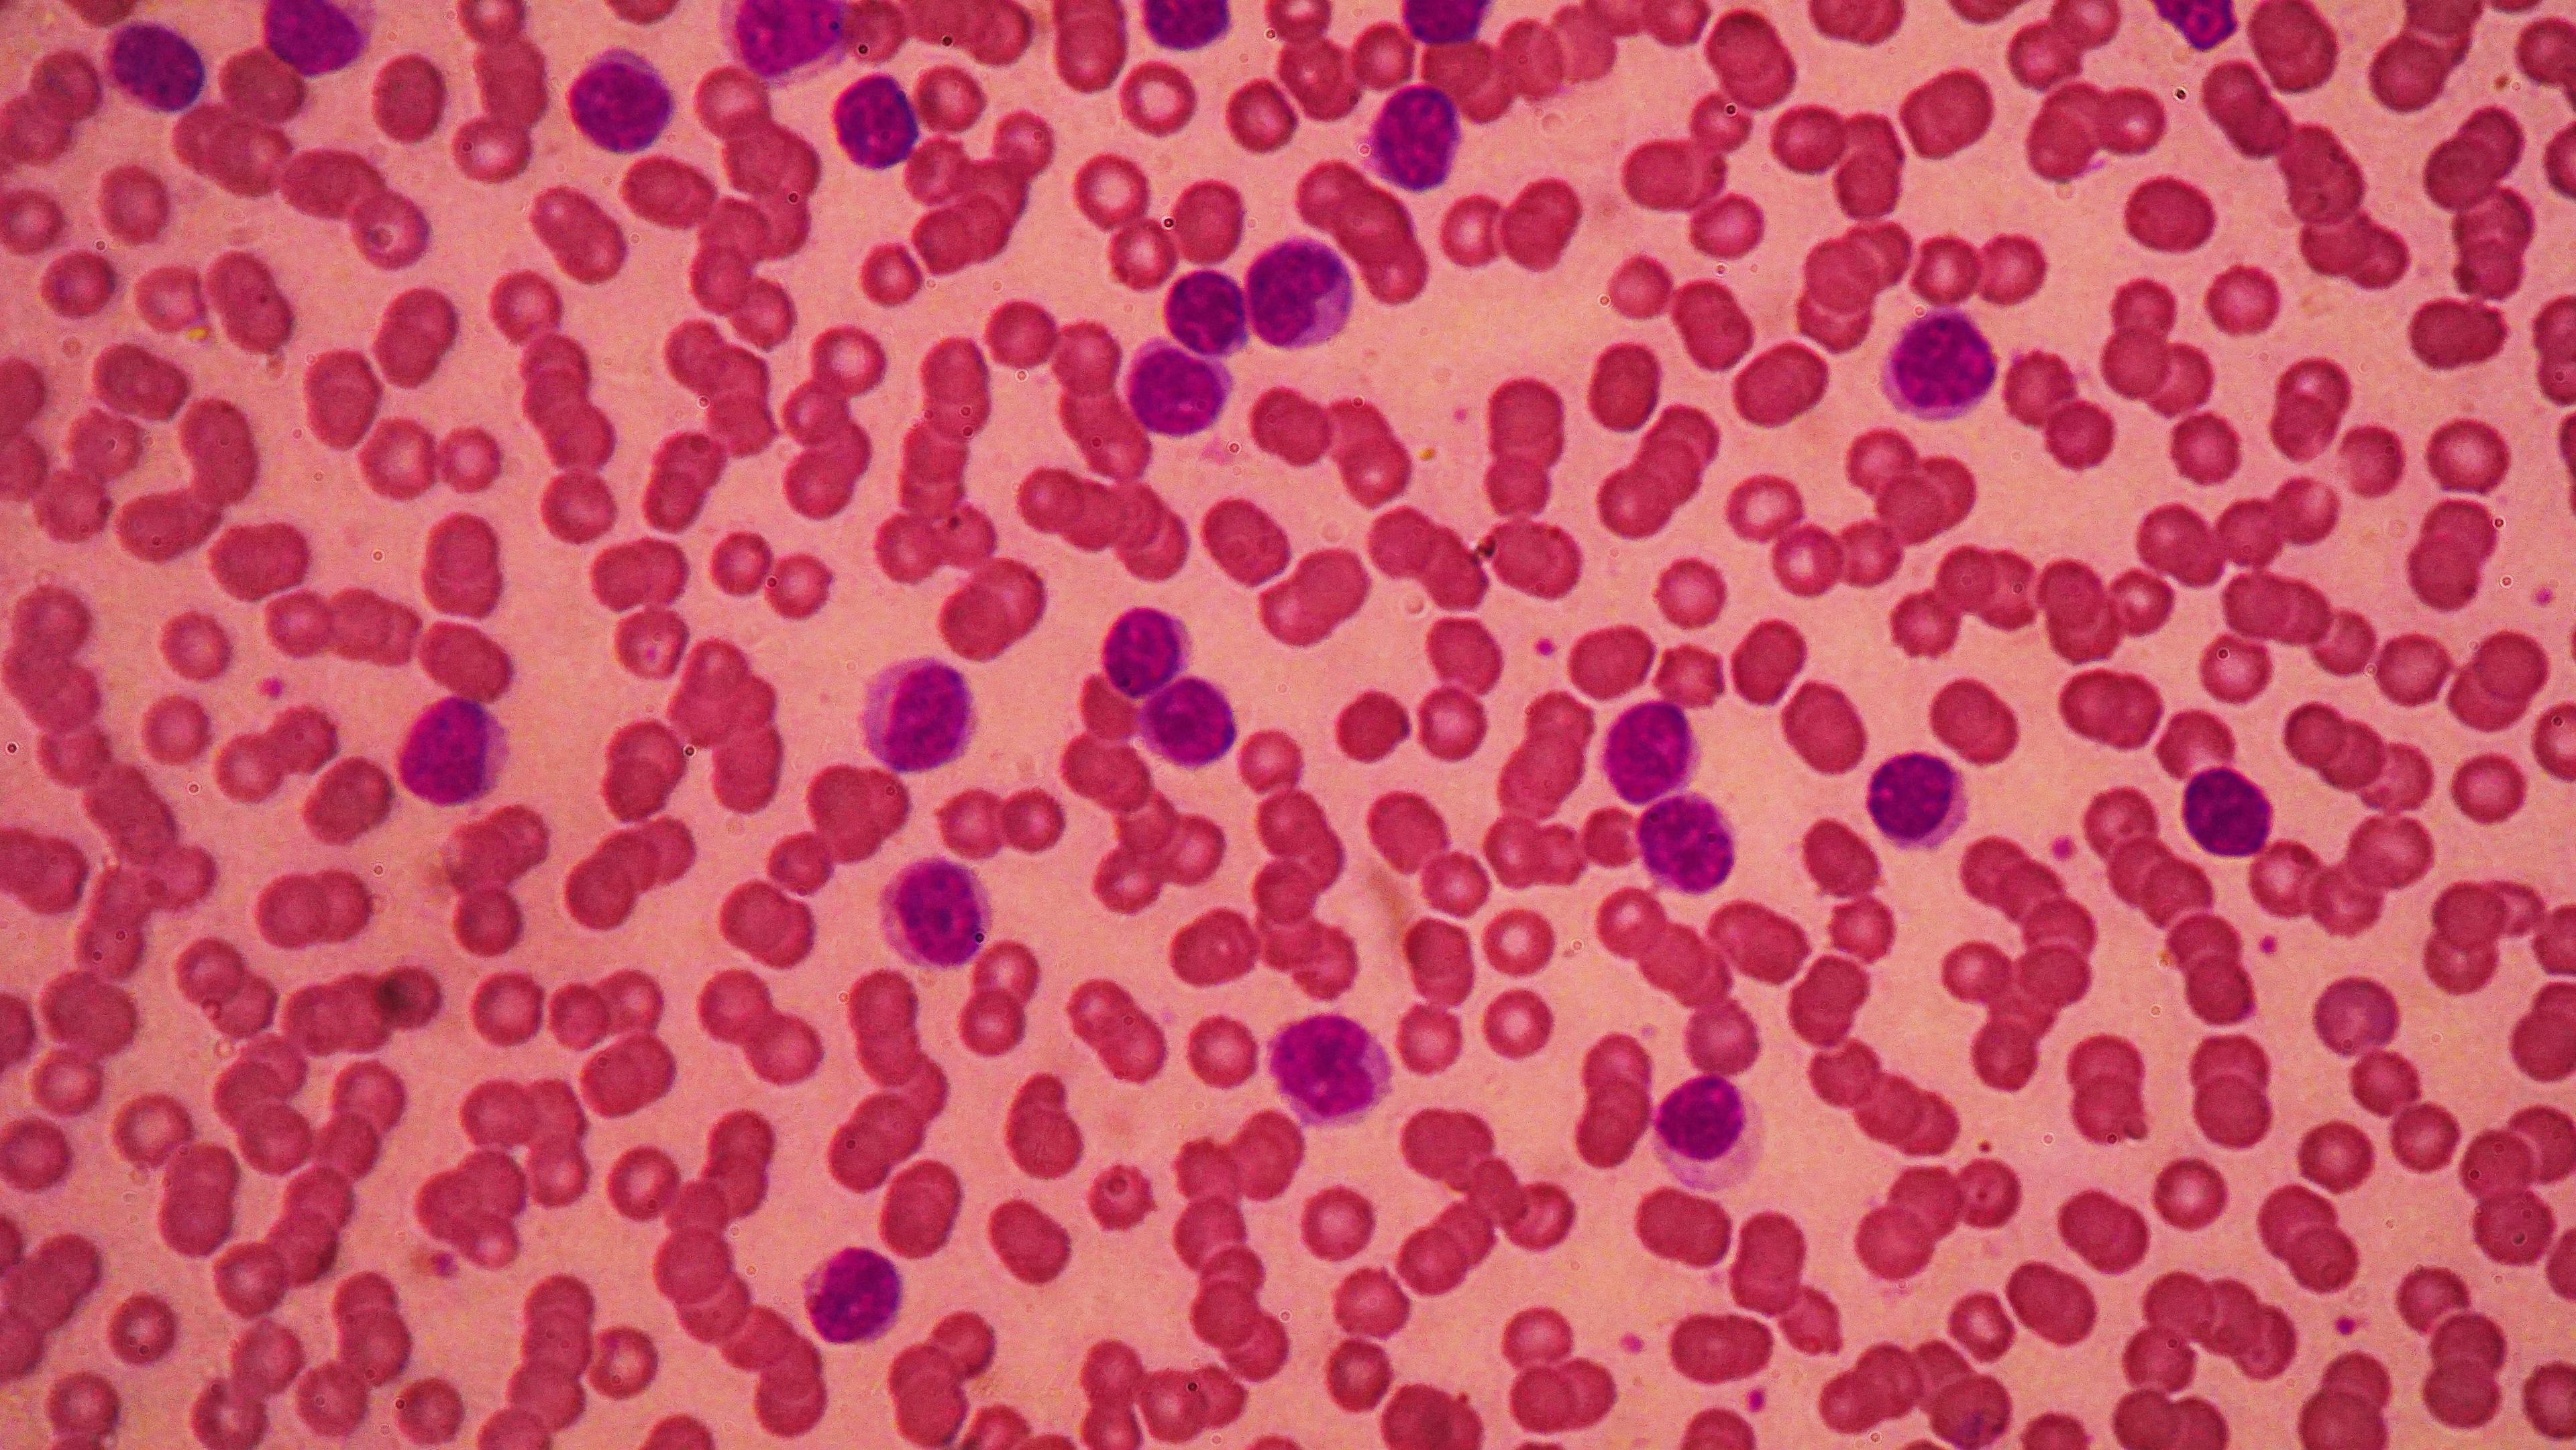 Image of chronic lymphocytic leukemia